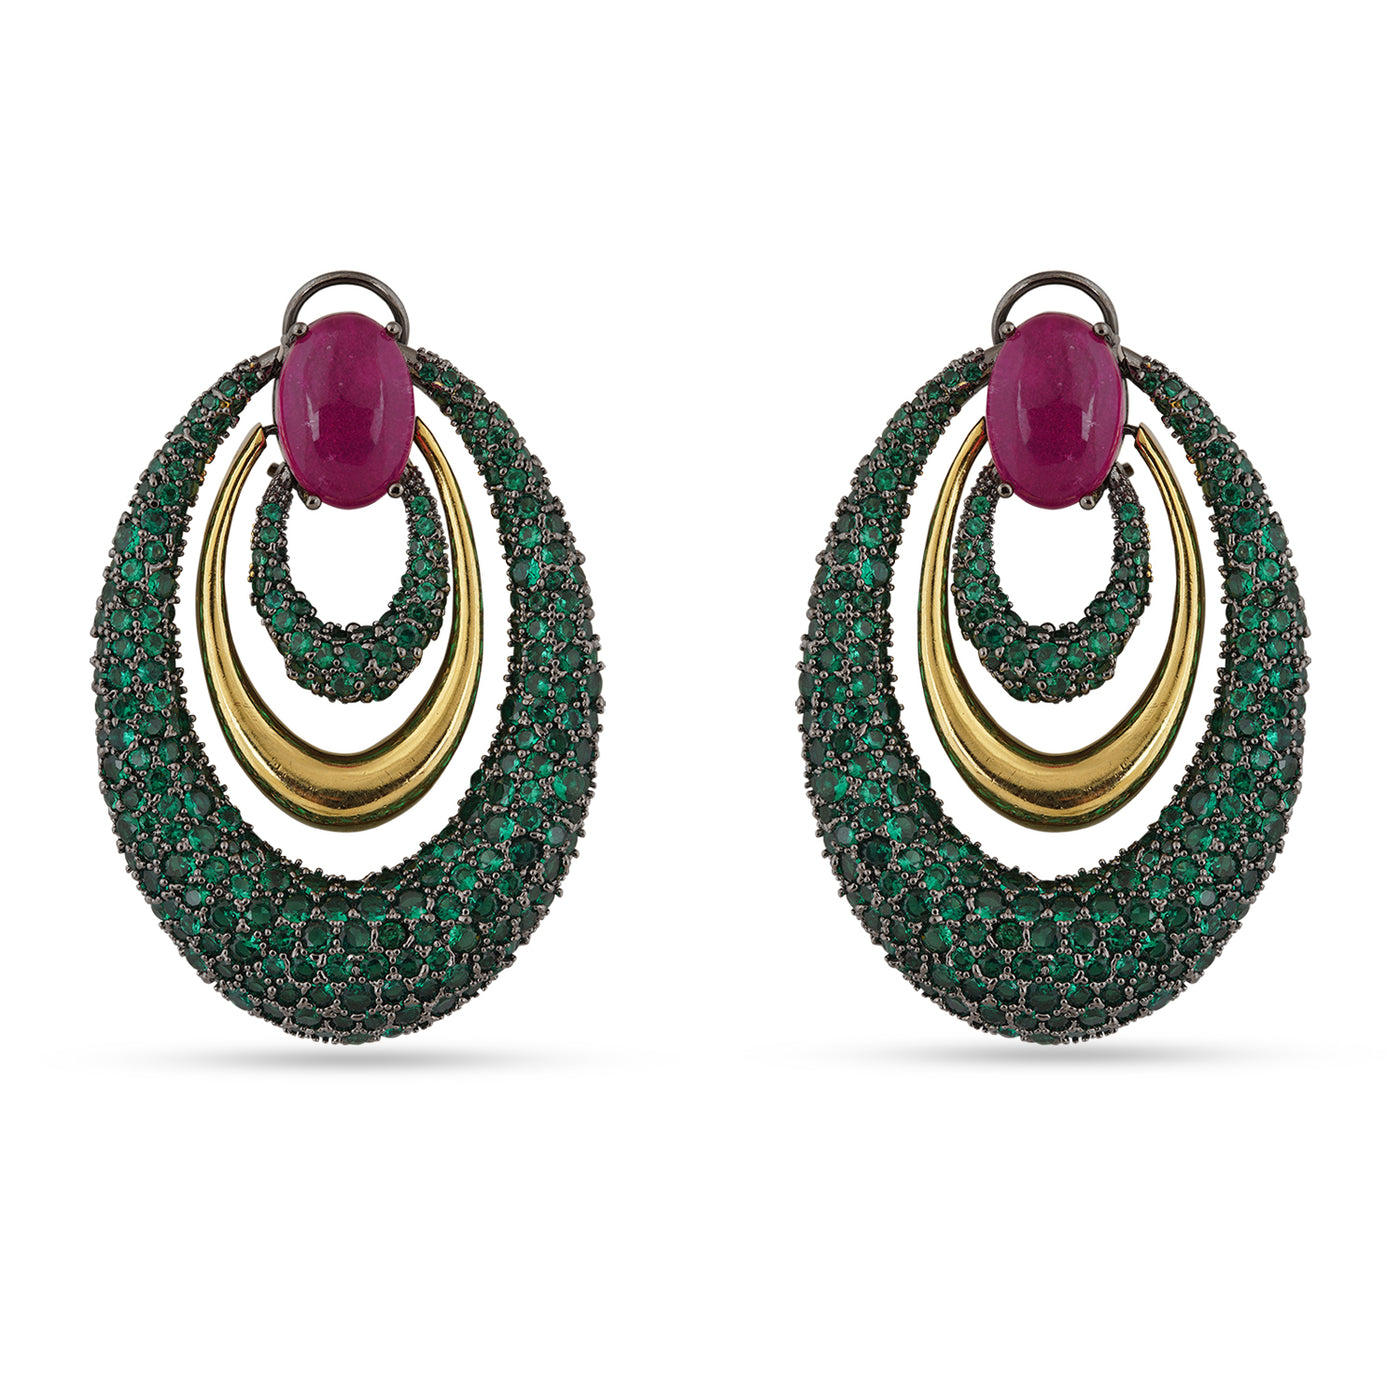 Hooriya - Pink and Green Stone Earrings